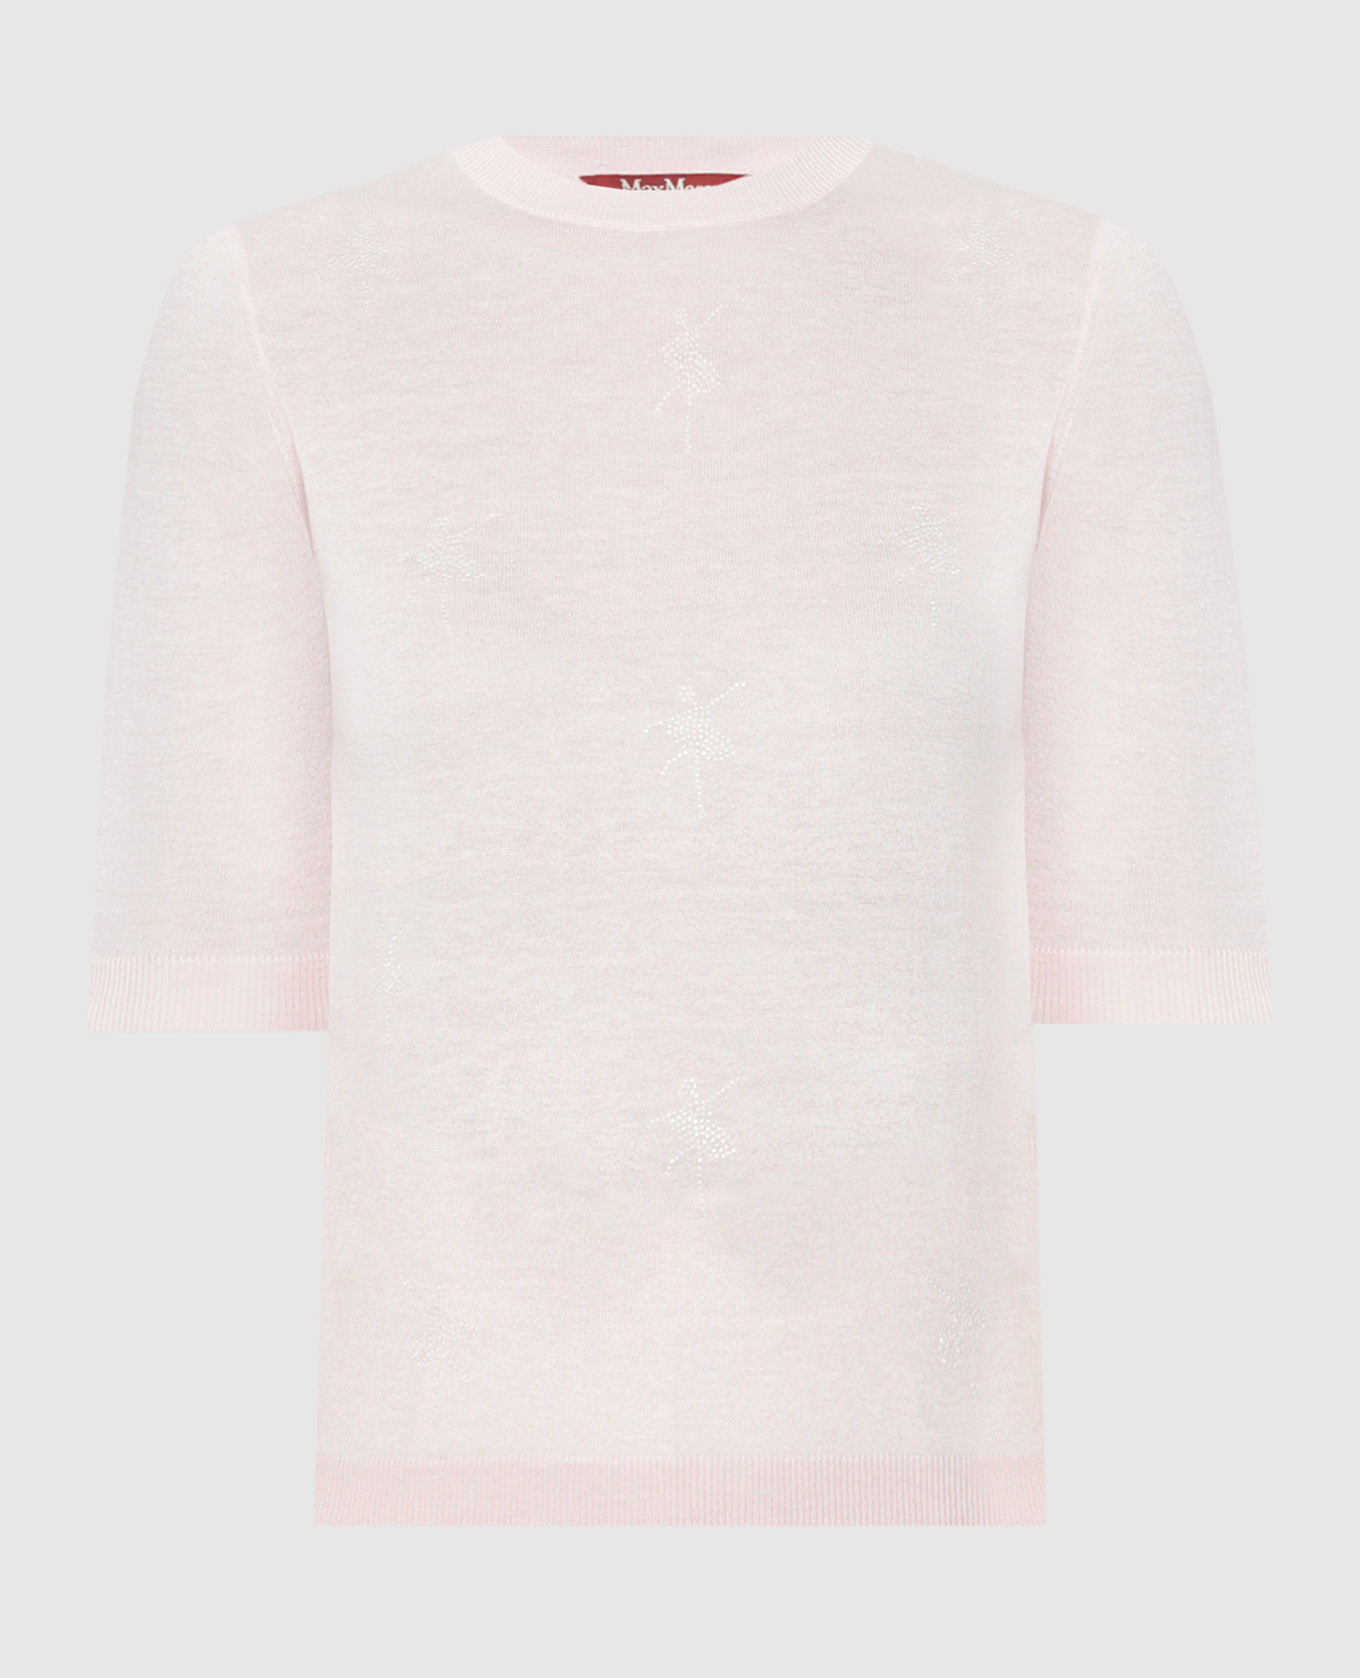 Розовая футболка SAMUELE из шелка и шерсти.